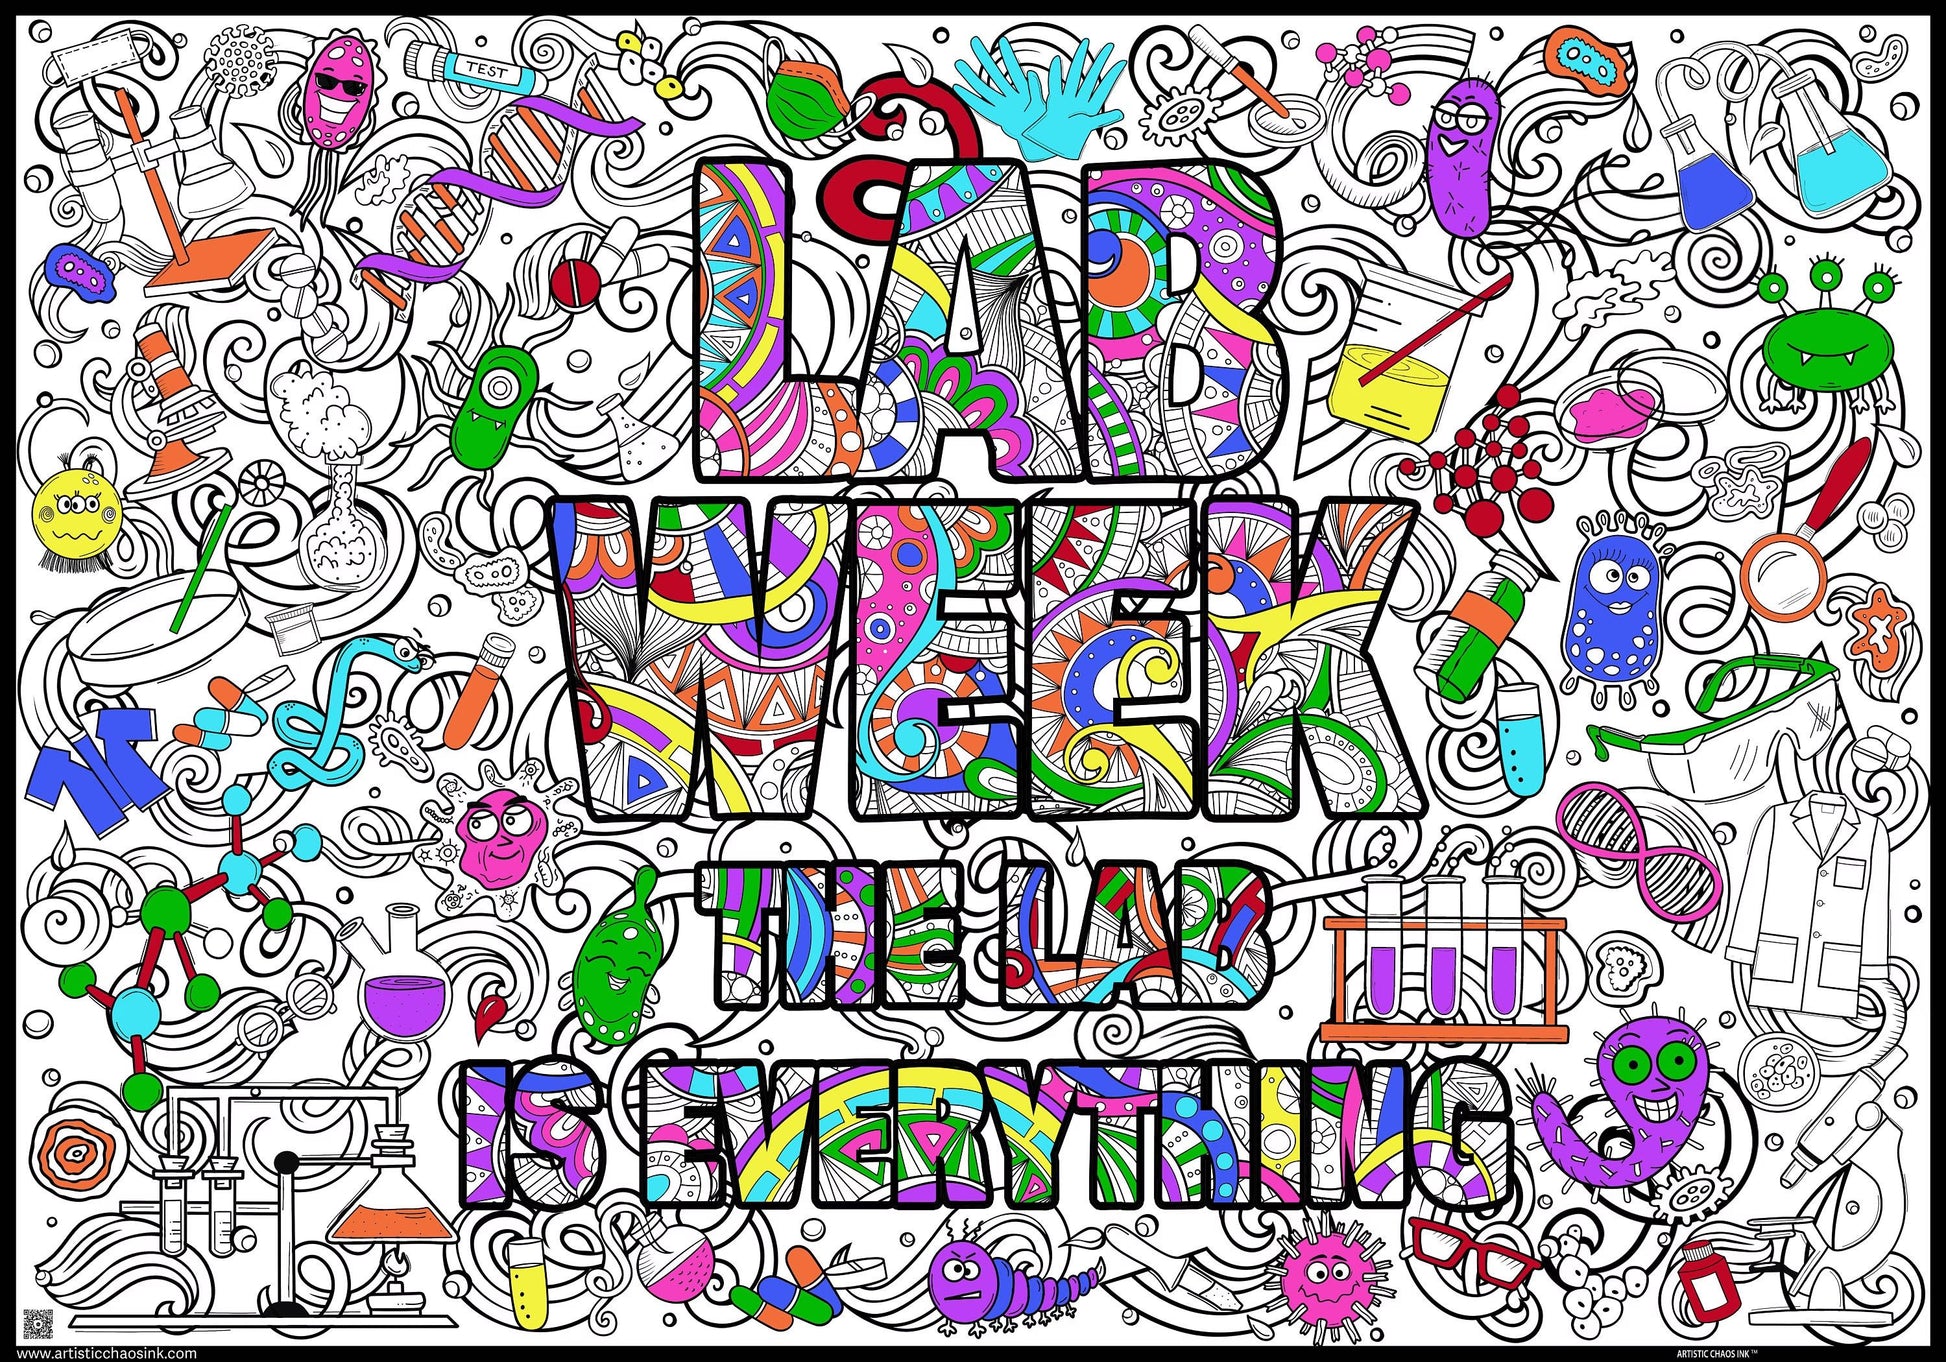 labweekwiththemecolored